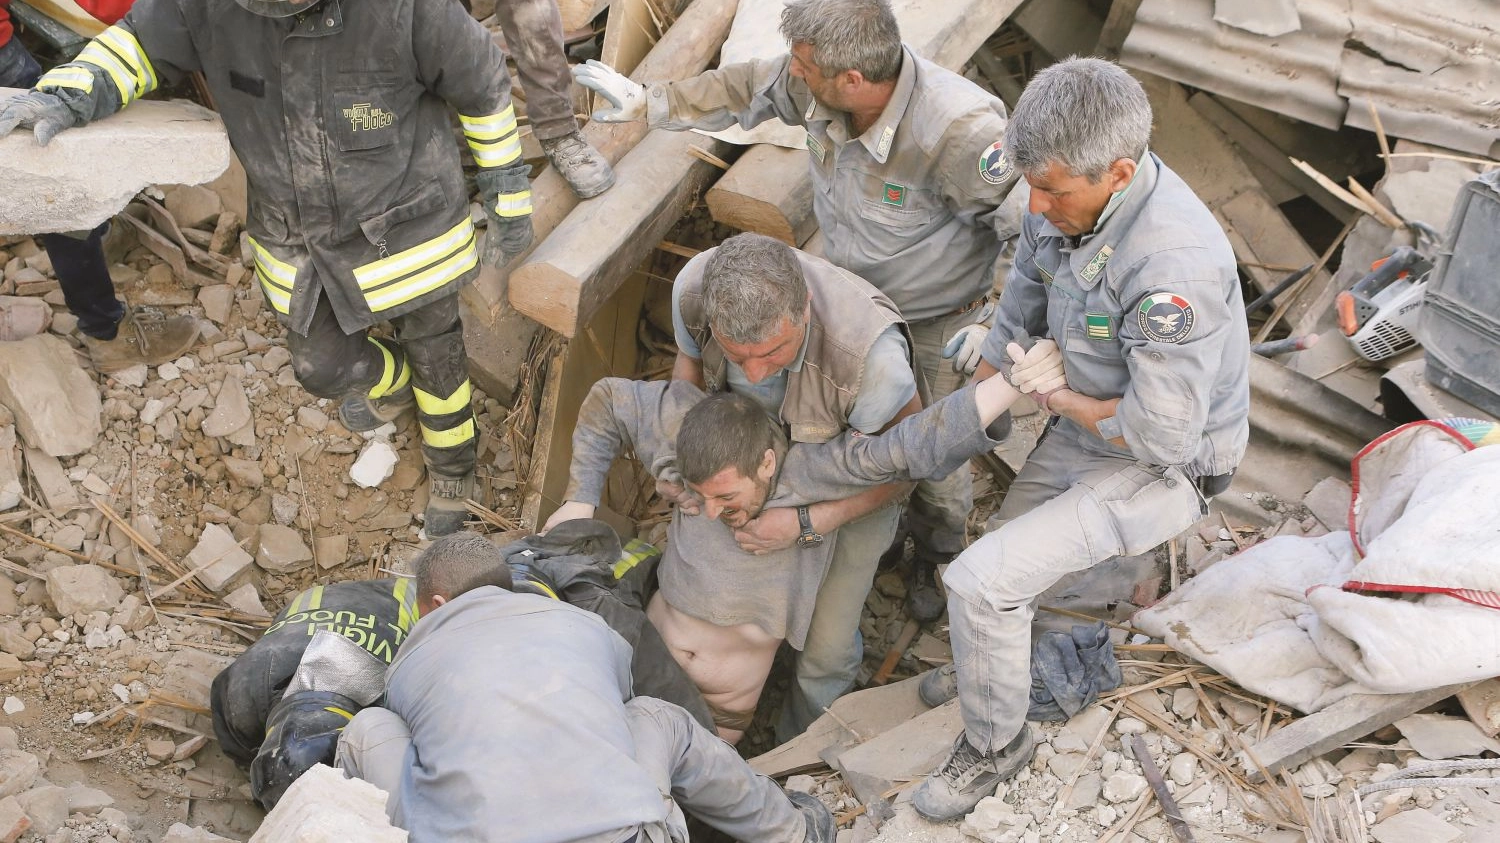 Un uomo estratto vivo dalle macerie durante il sisma di Amatrice